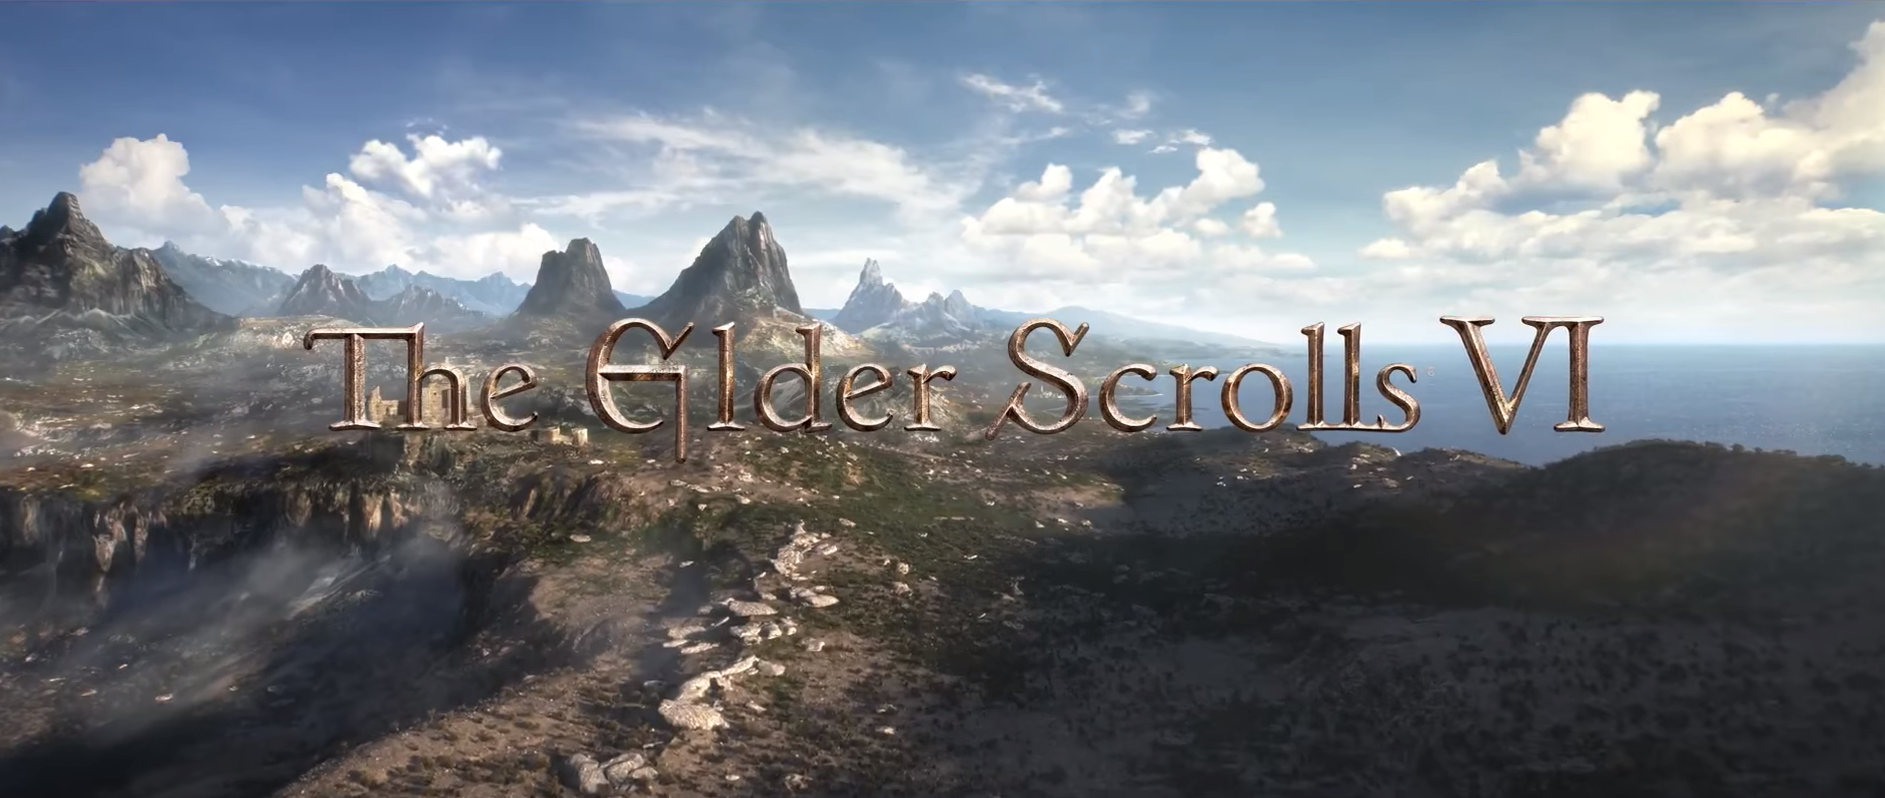 The Elder Scrolls VI foi confirmado pela Bethesda